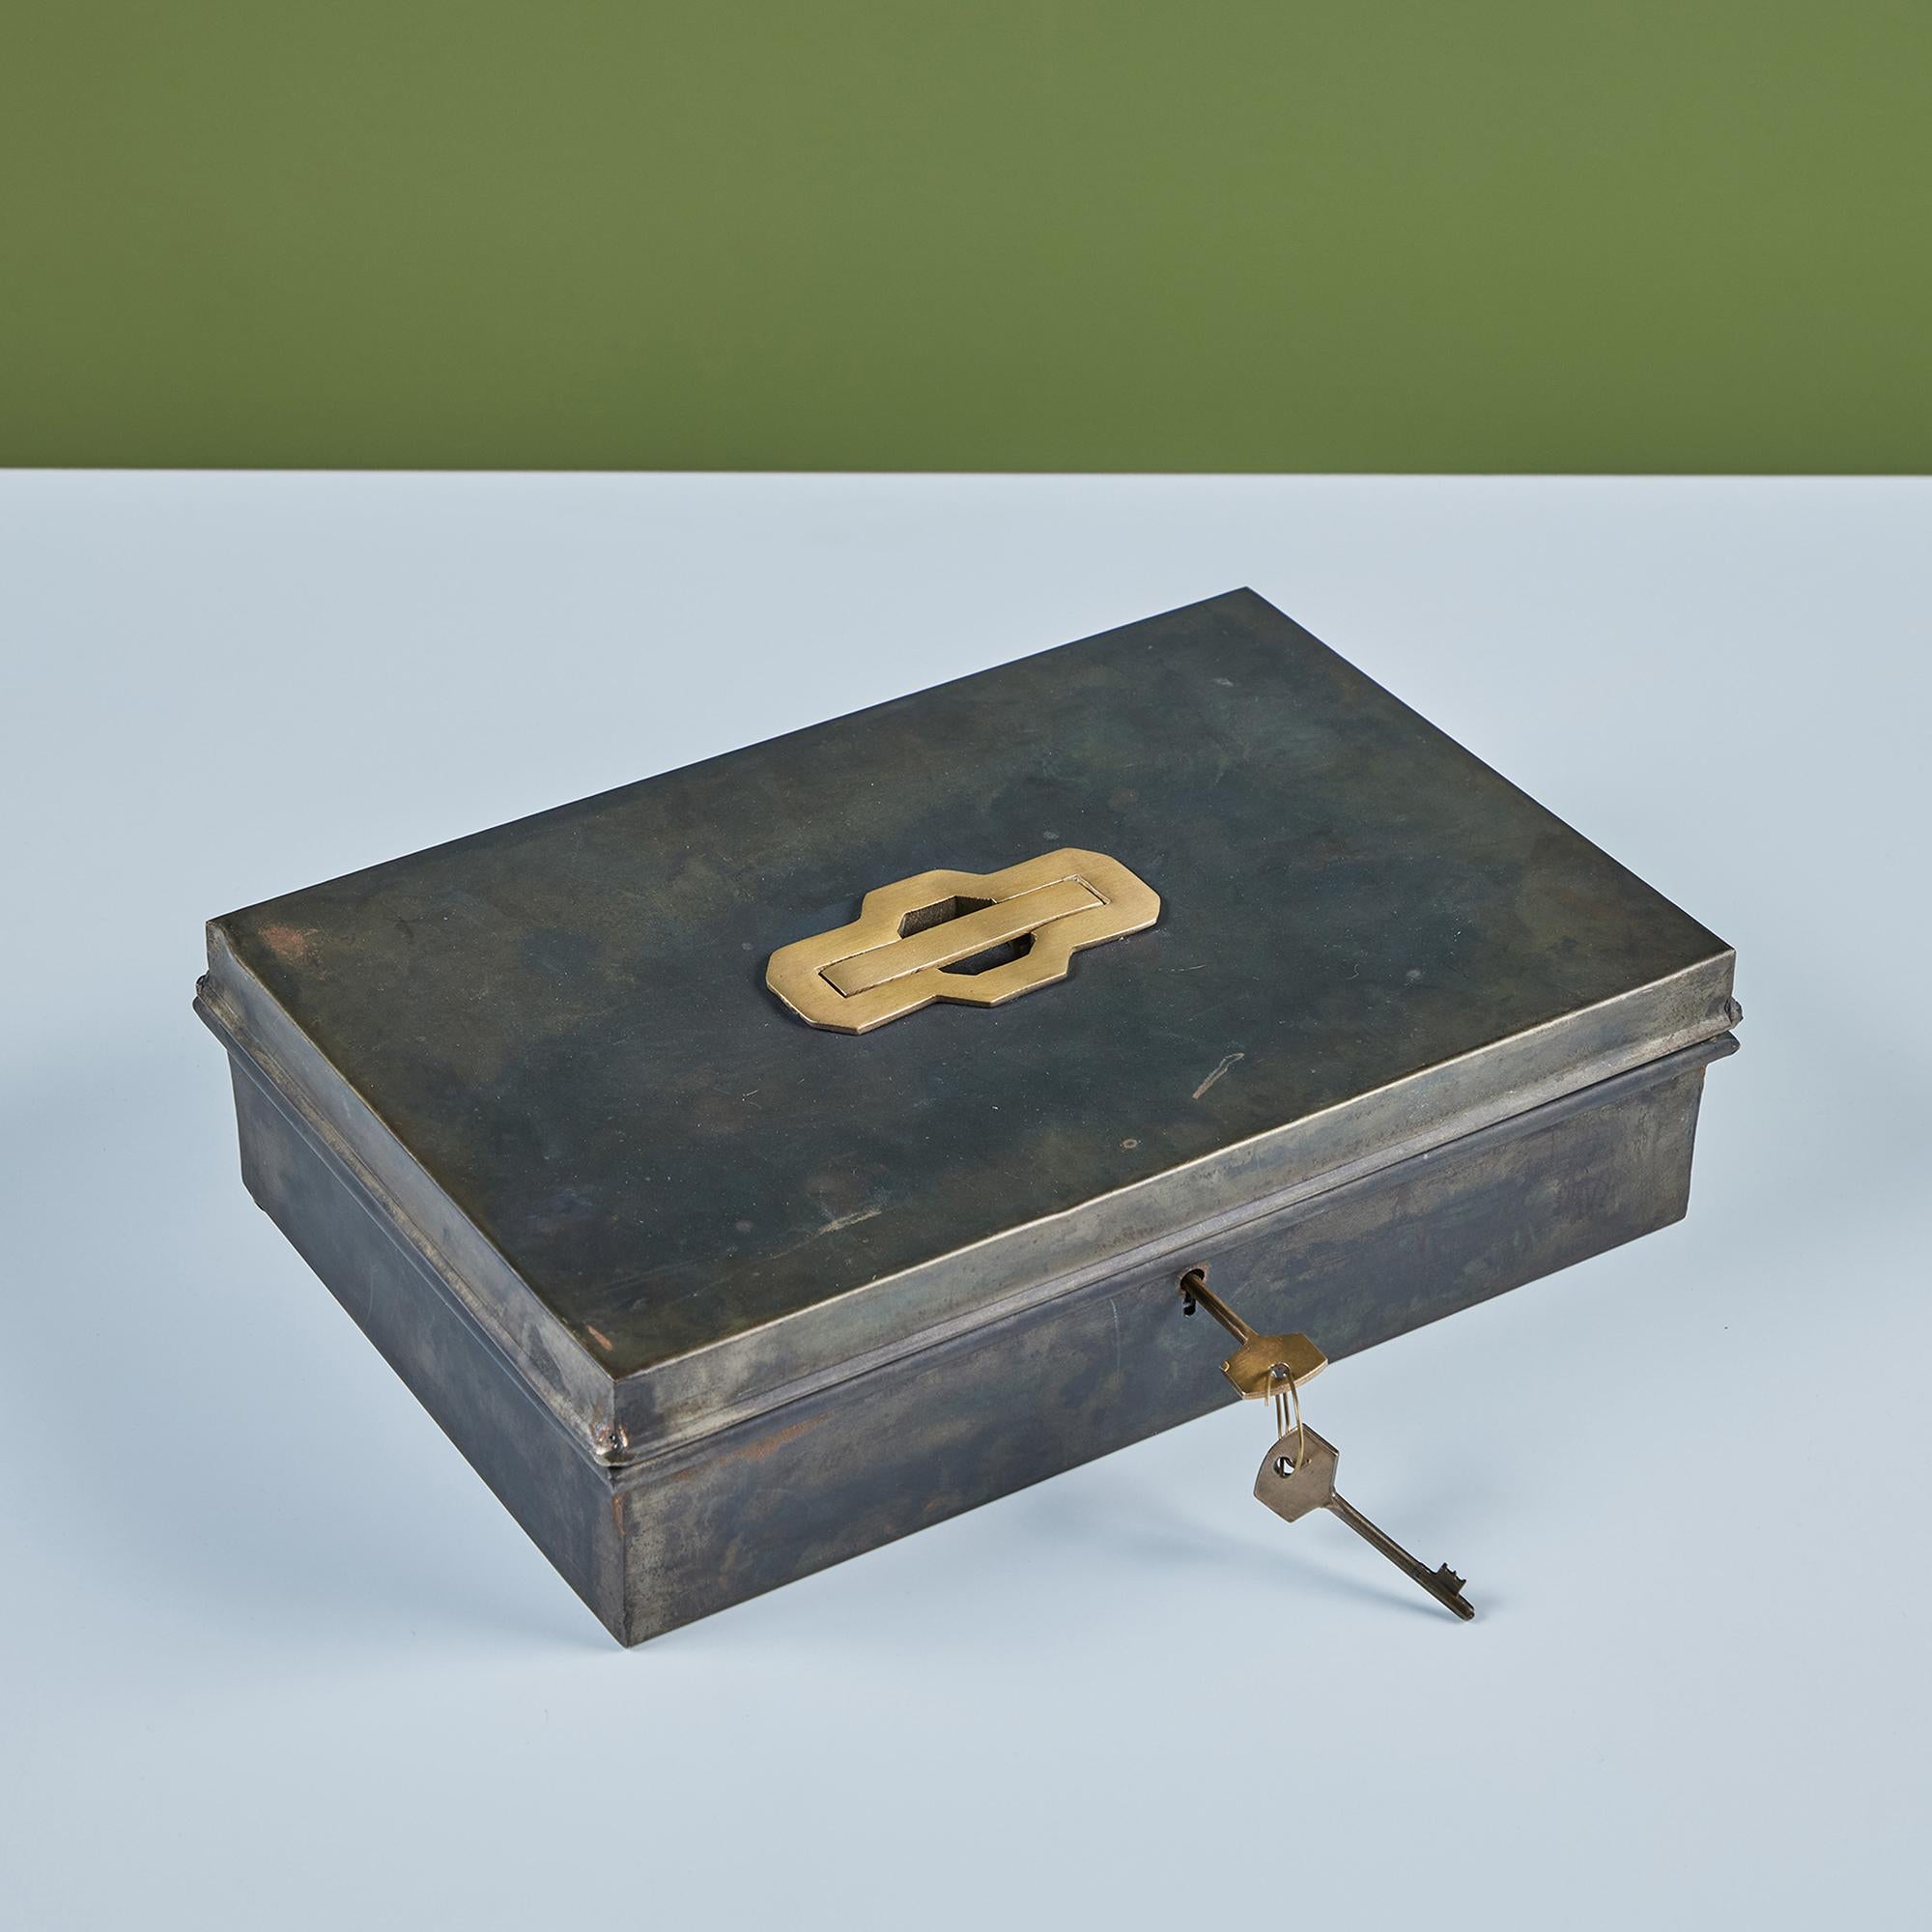 Rechteckige Aufbewahrungsbox aus Metall mit einem ausziehbaren Messinggriff am Deckel der Box. Die Box wird mit einem Satz Messingschlüssel geliefert, um Ihre Wertsachen sicher aufzubewahren. 

Abmessungen
12